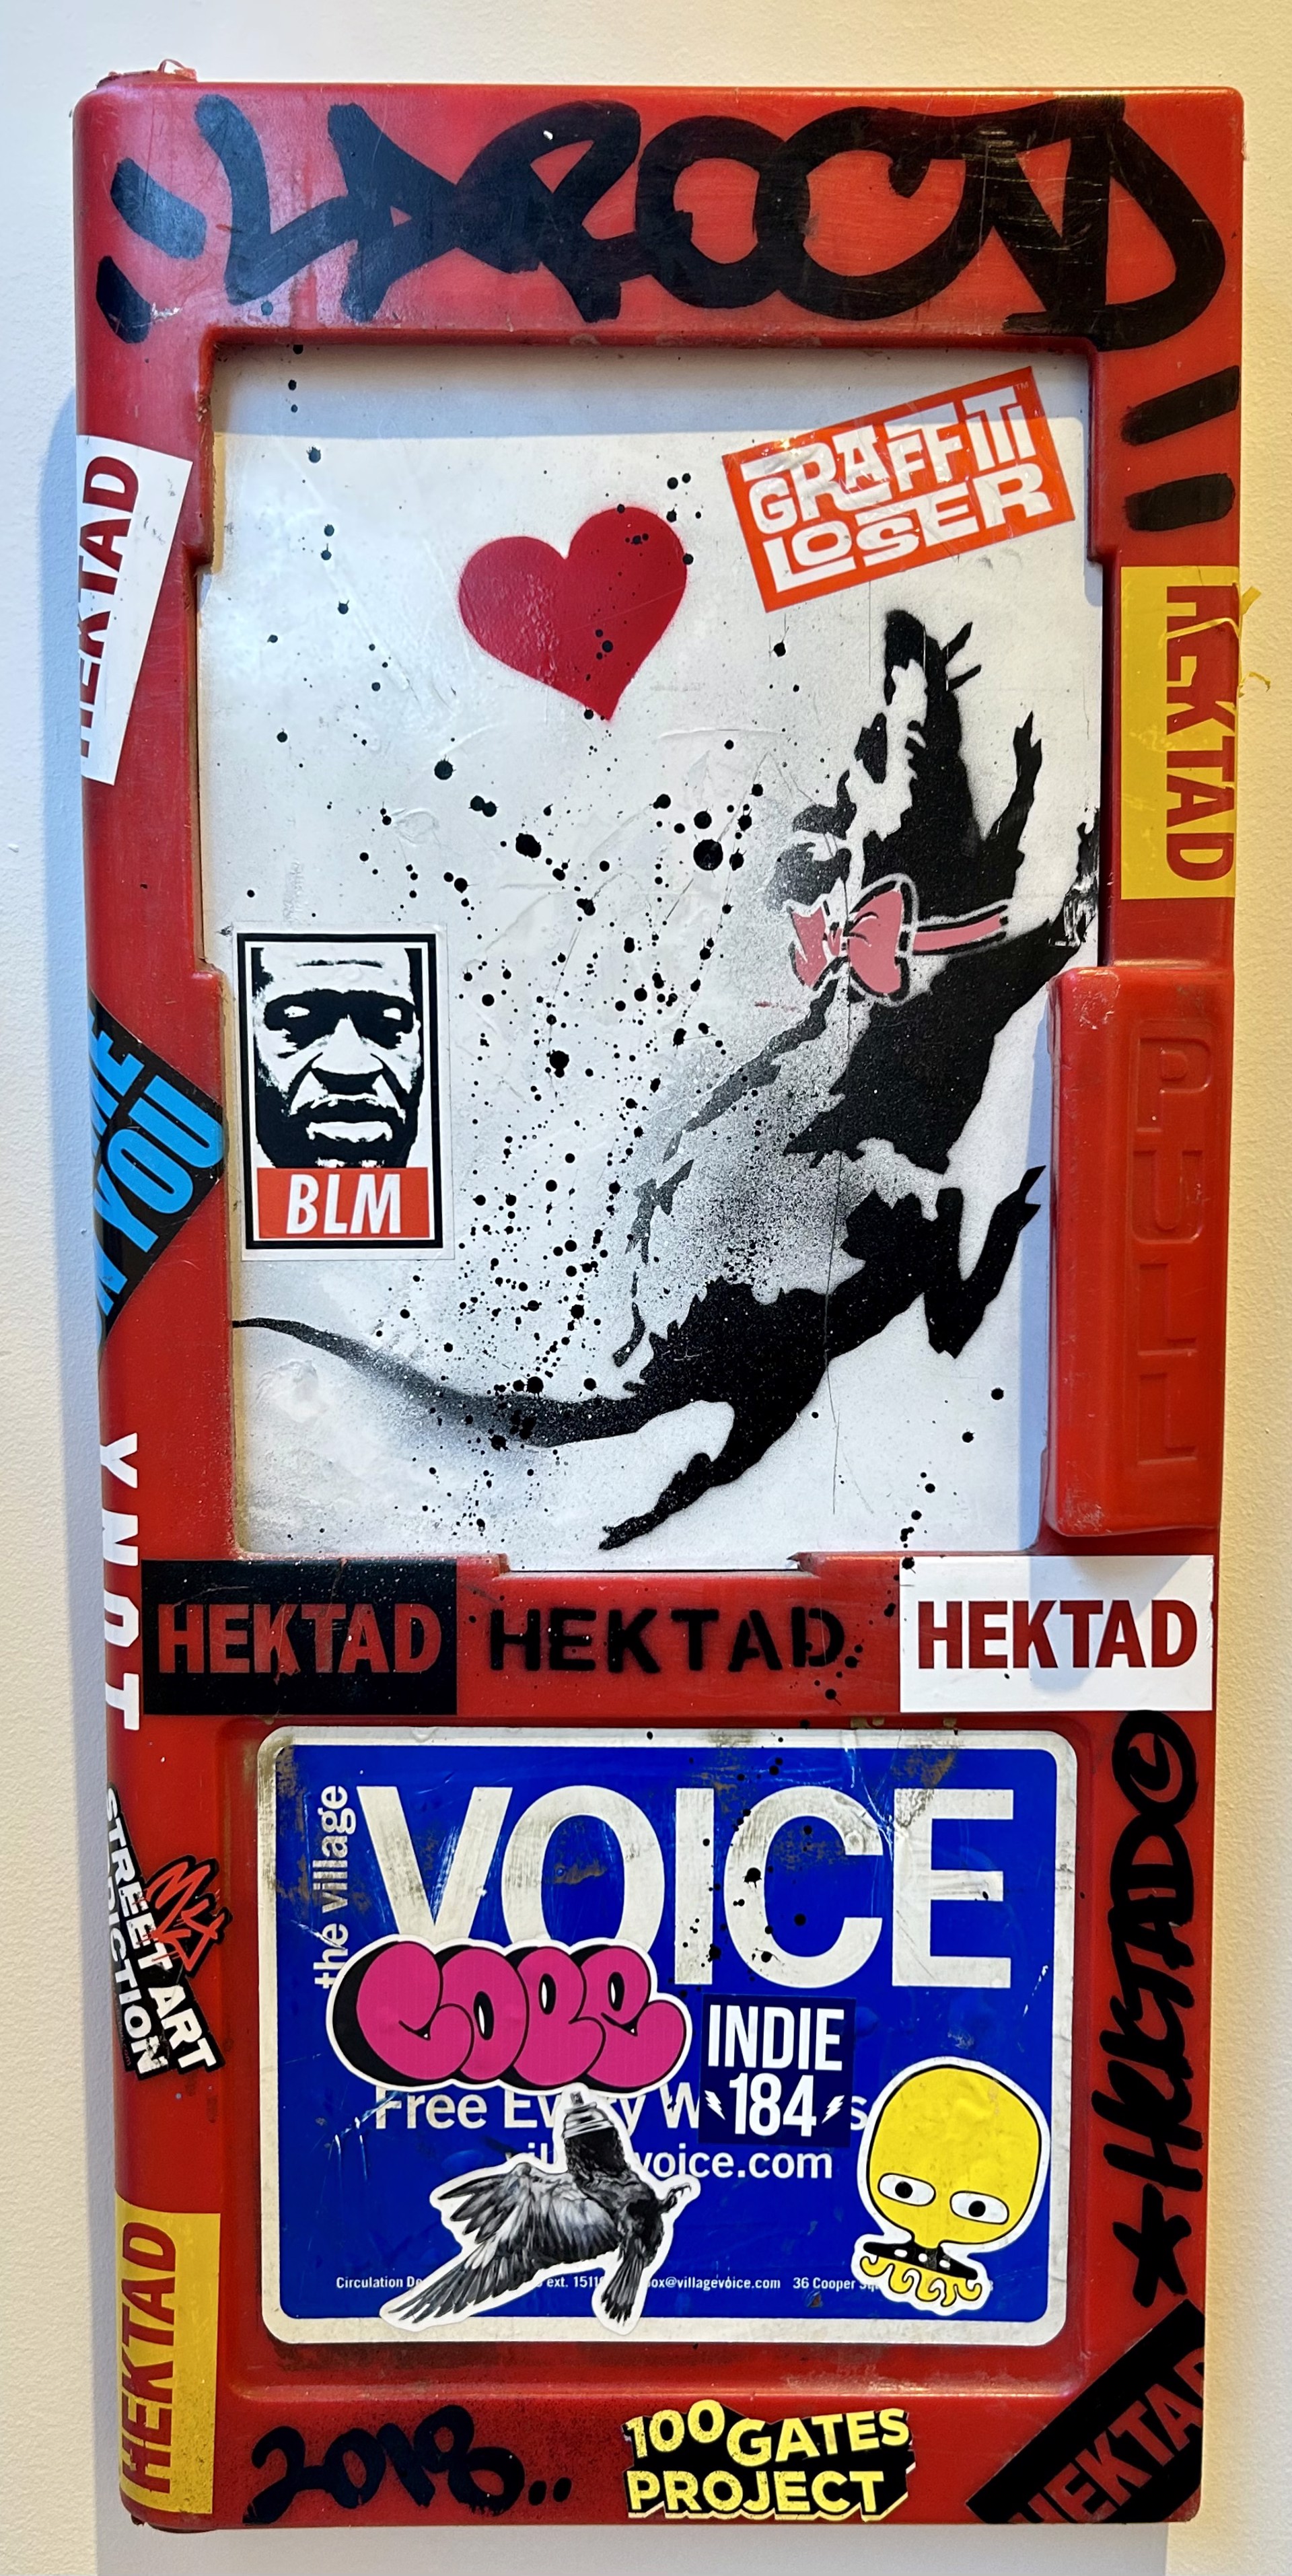 Village Voice by HEKTAD